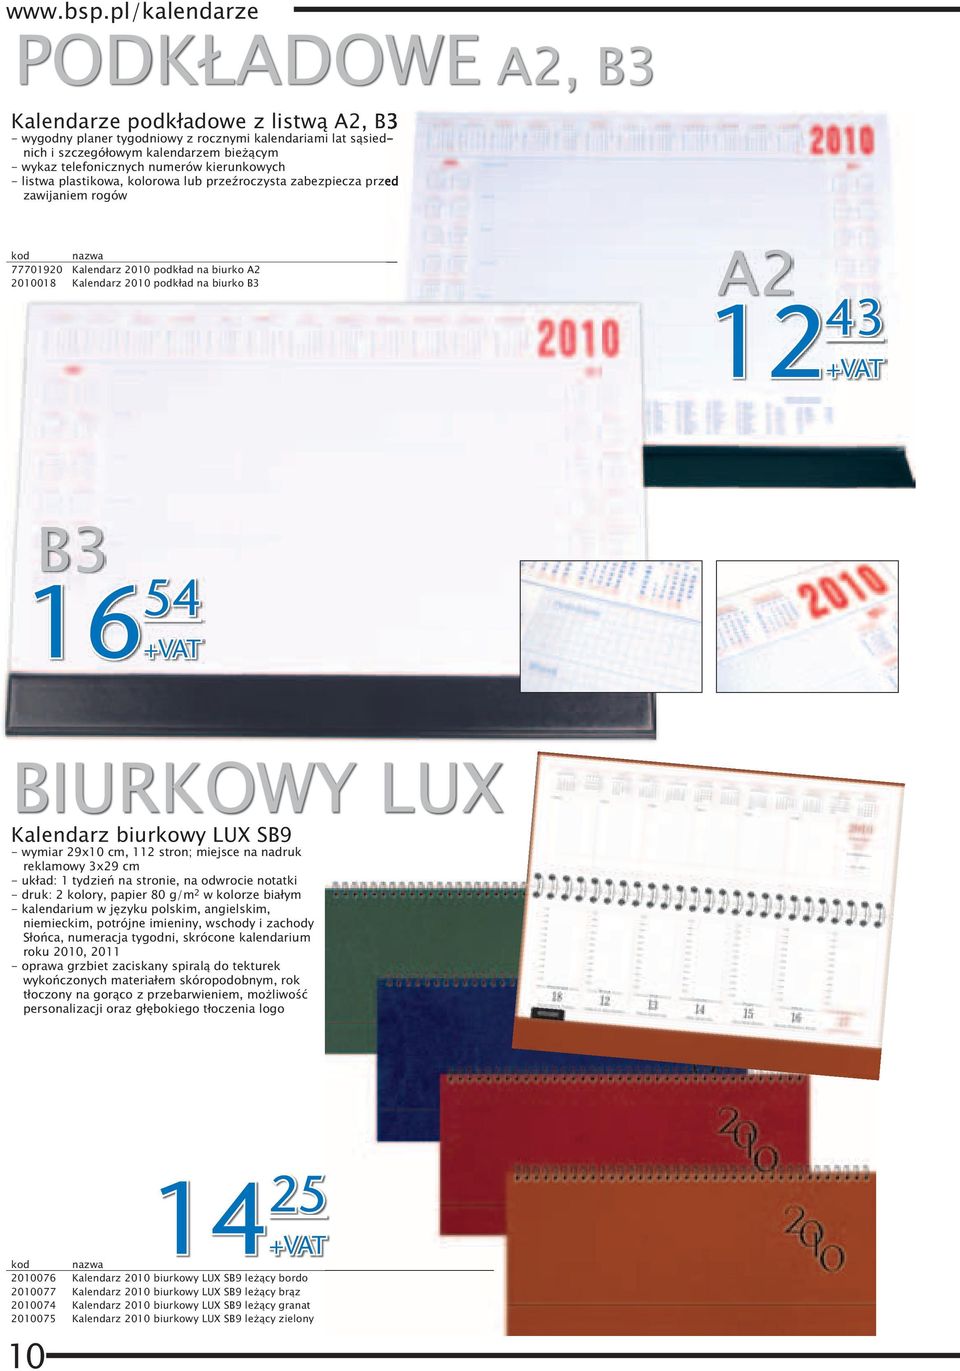 54 BIURKOWY LUX Kalendarz biurkowy LUX SB9 - wymiar 29x10 cm, 112 stron; miejsce na nadruk reklamowy 3x29 cm - układ: 1 tydzień na stronie, na odwrocie notatki - druk: 2 kolory, papier 80 g/m 2 w